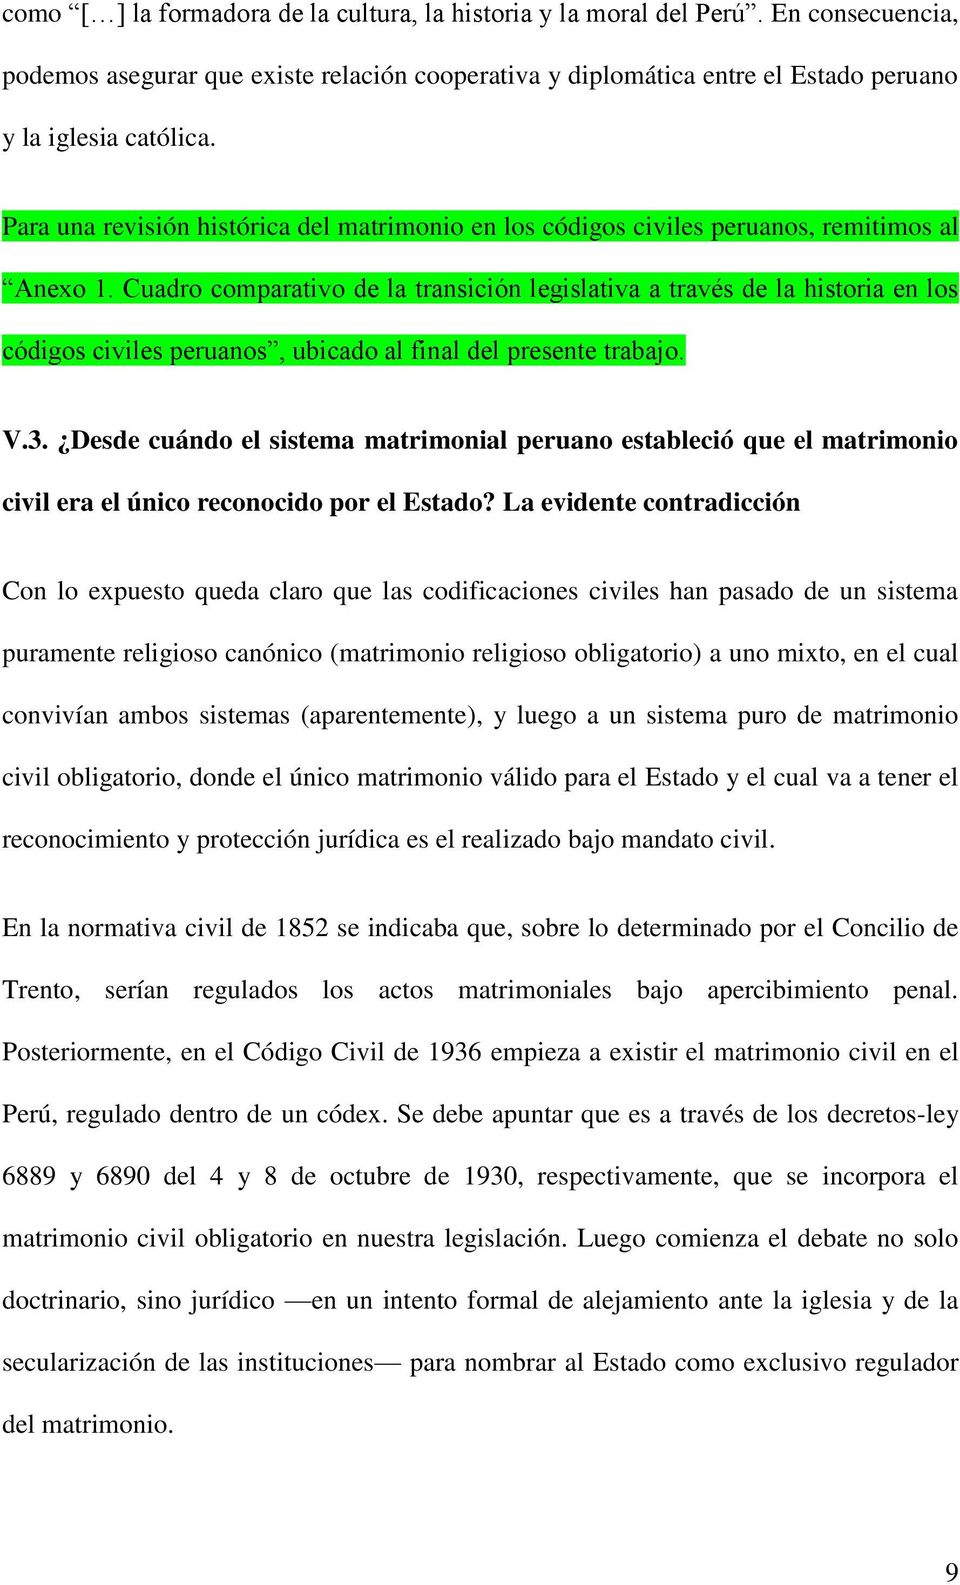 Cuadro comparativo de la transición legislativa a través de la historia en los códigos civiles peruanos, ubicado al final del presente trabajo. V.3.